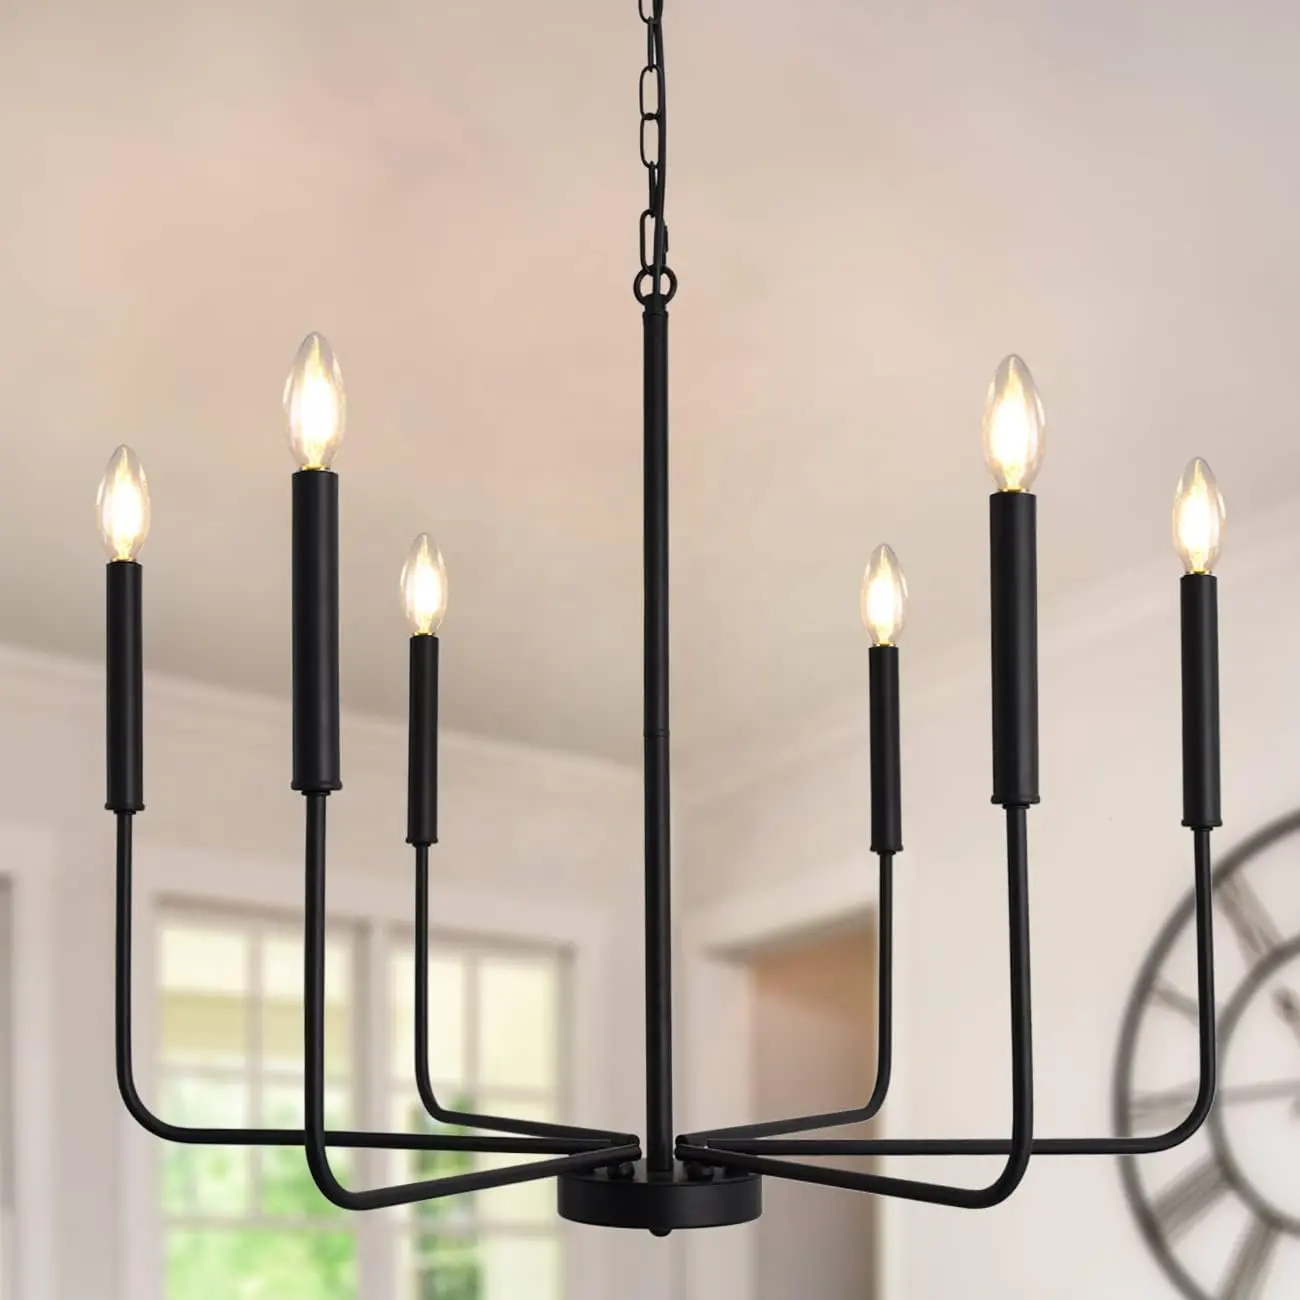 Lampadario a candela nera, lampadario vintage del paese di natale 6 luci decorative per l'illuminazione